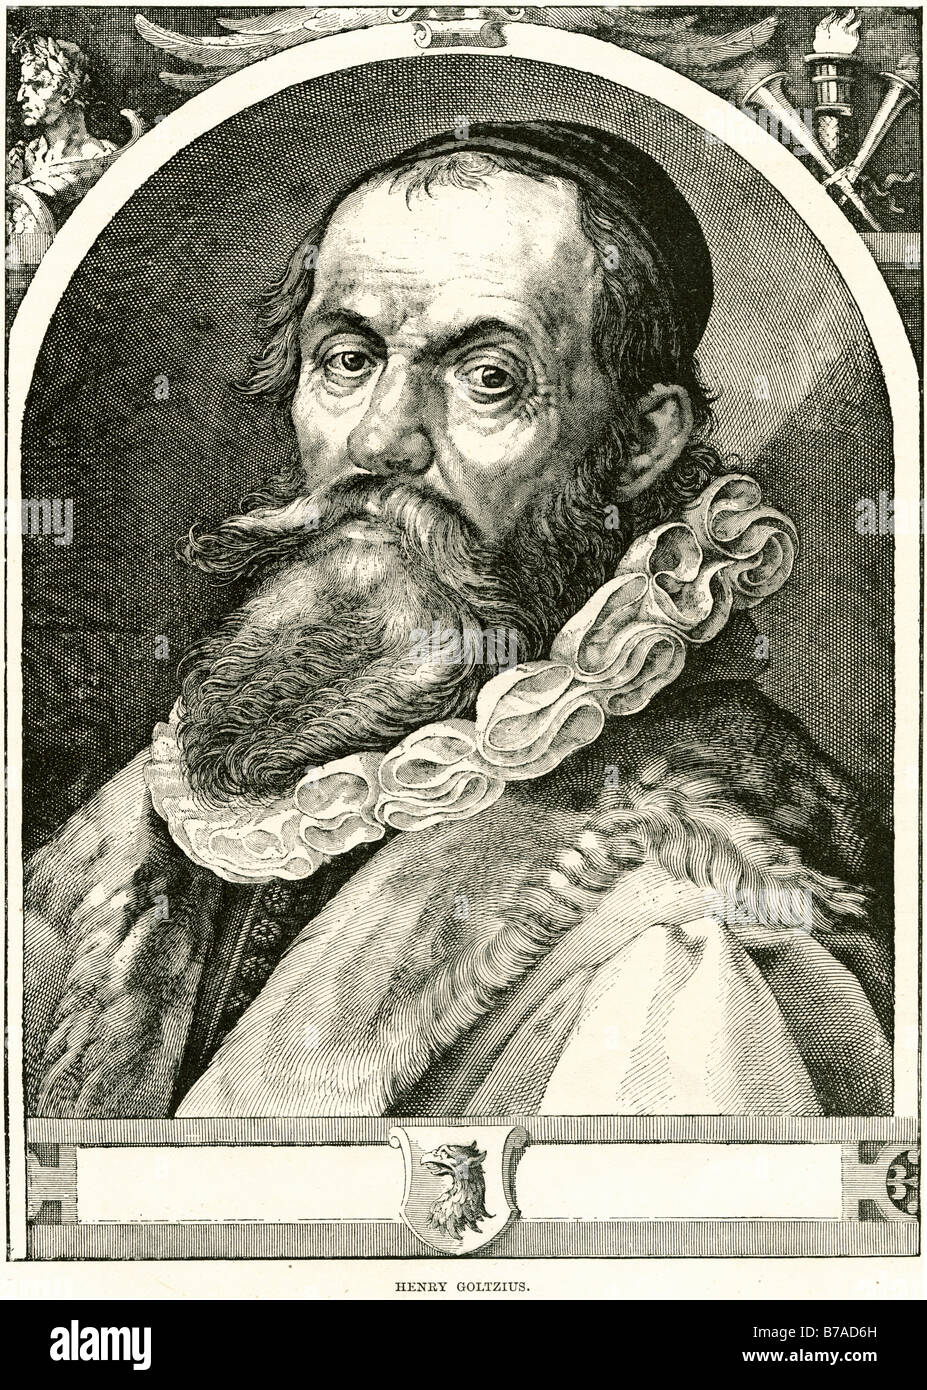 Henry Coltzius Goltzius Hendrik Goltzius (Januar oder Februar 1558 - 1. Januar 1617, Haarlem) war ein niederländischer Grafiker, draftsma Stockfoto